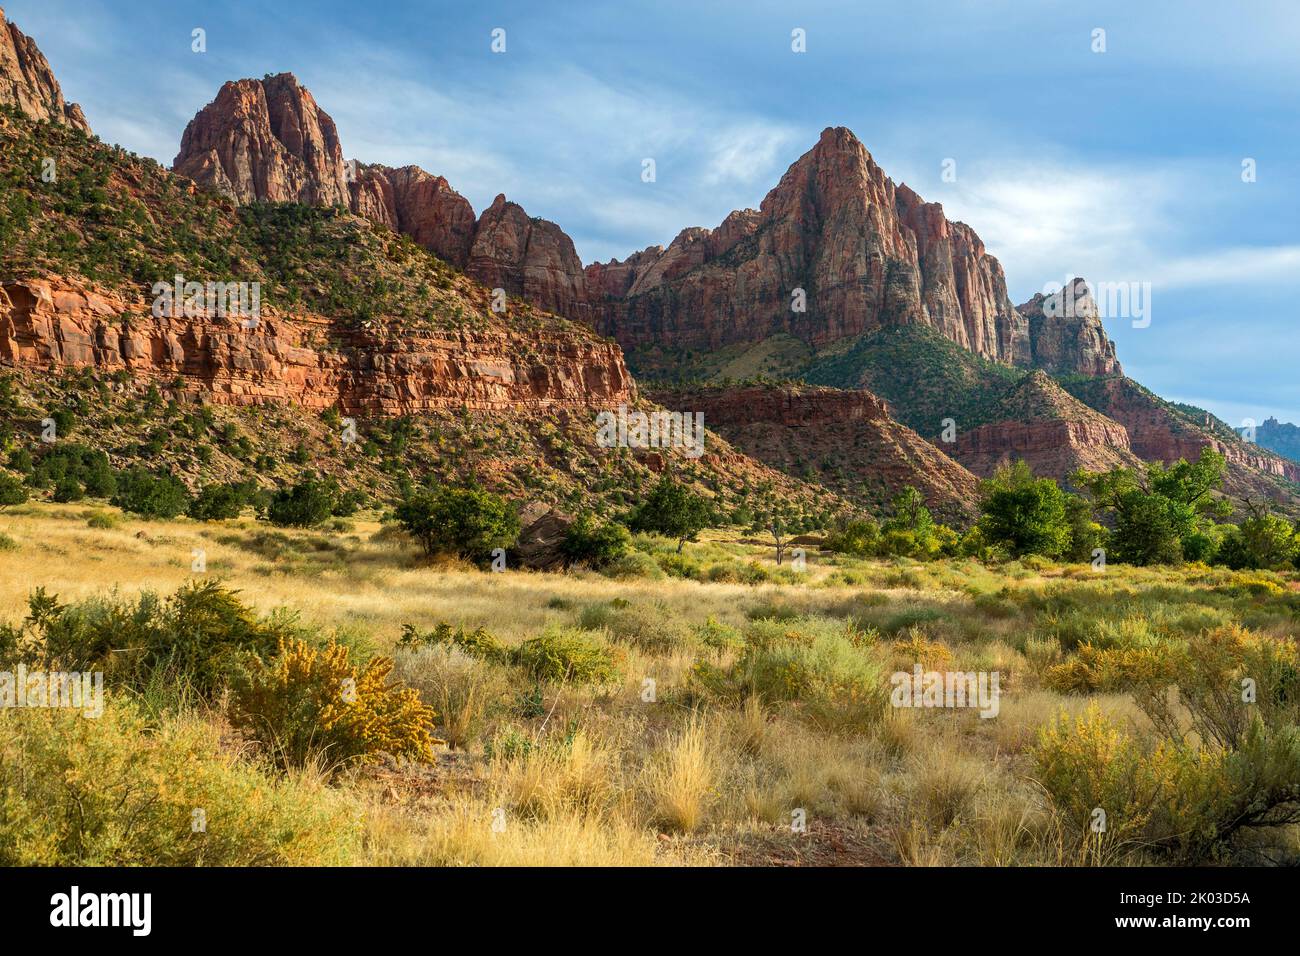 El Parque Nacional Zion está ubicado en el suroeste de Utah en la frontera con Arizona. Tiene una superficie de 579 kö² y se encuentra entre 1128 m y 2660 m de altitud. Paisaje en el sendero Pa'rus. Vista a la montaña el Watchman. Foto de stock